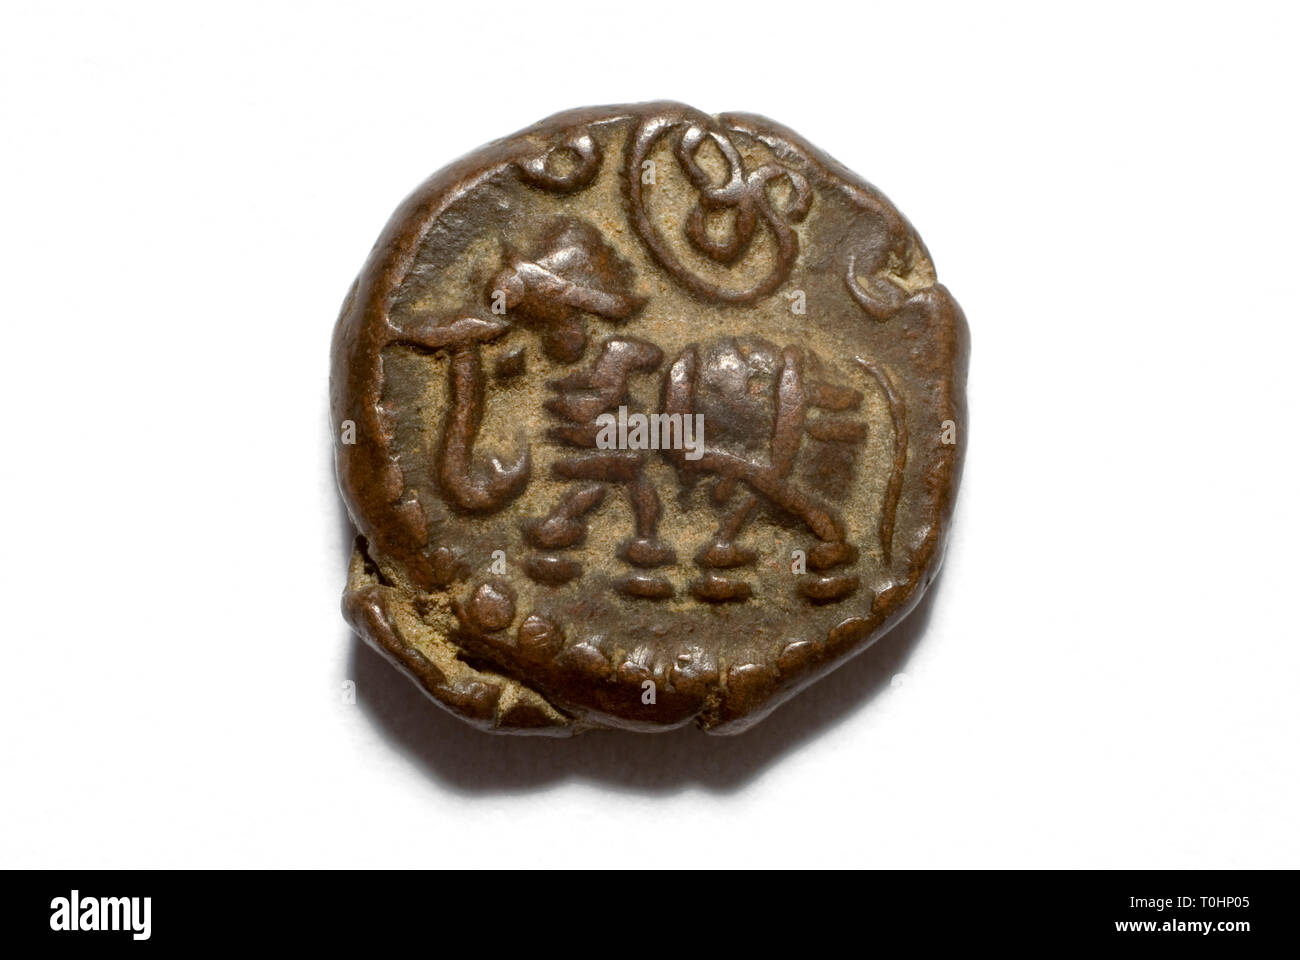 Indian Coin of Maharaja Krishnaraja Wadiyar III of Mysore Stock Photo